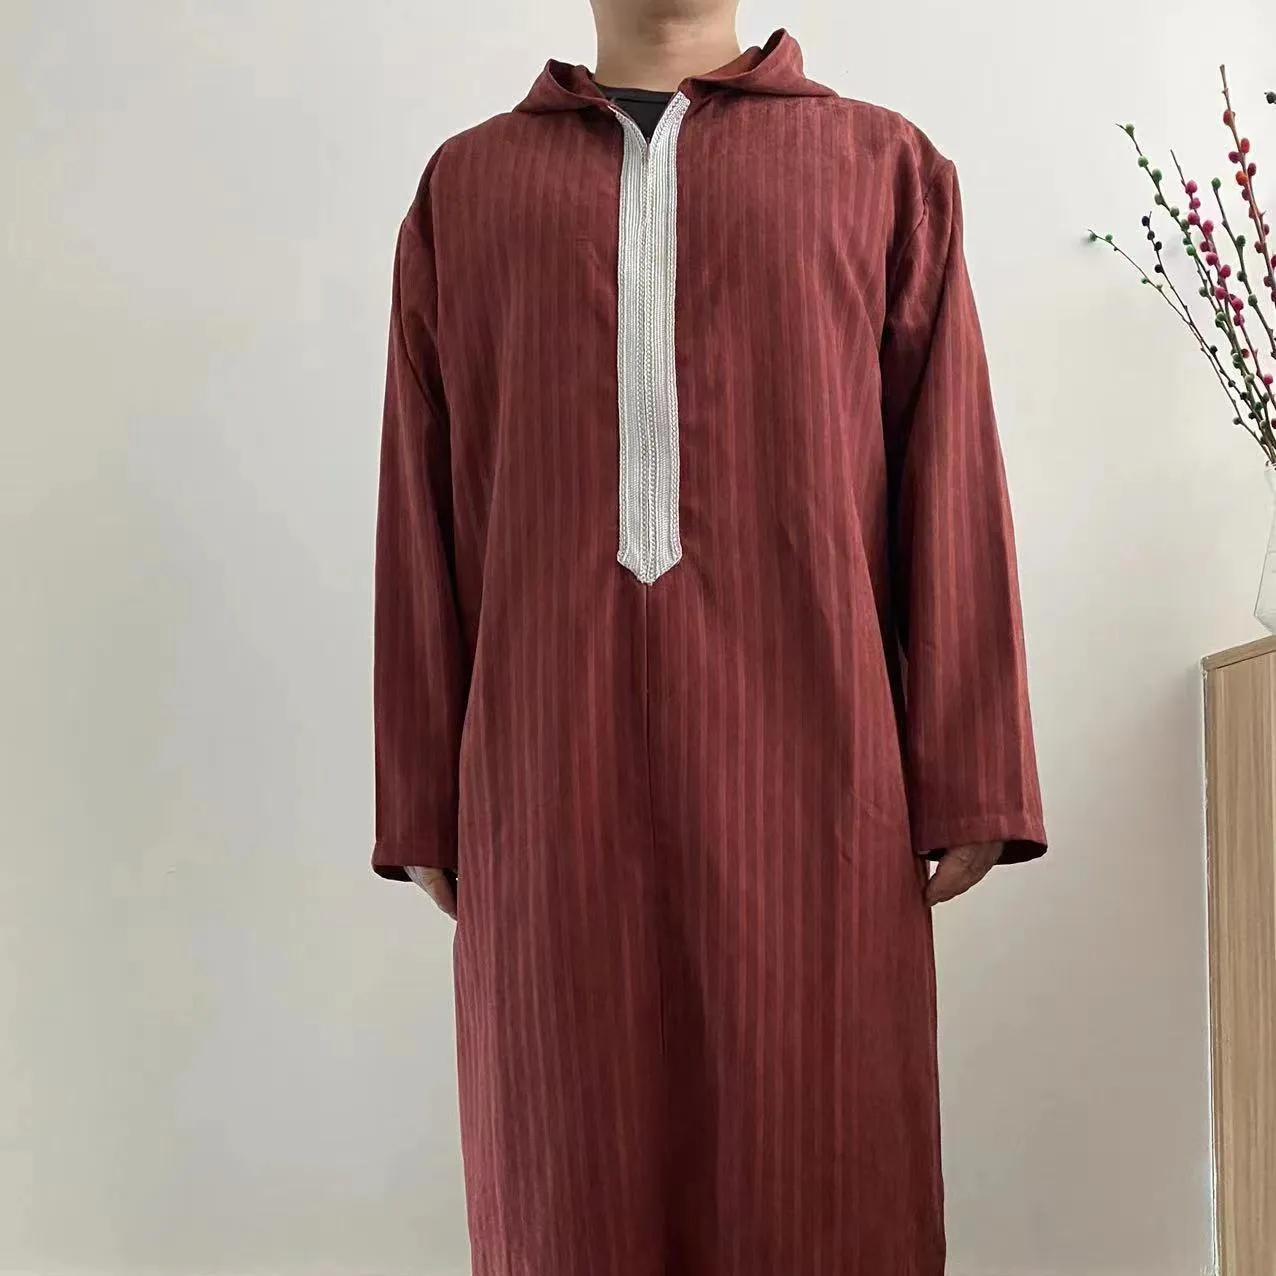 ثوب عباية إسلامية تقليدية في دبي ، ثوب الرجل الإسلامي السعودي قفطان مغربي للرجال